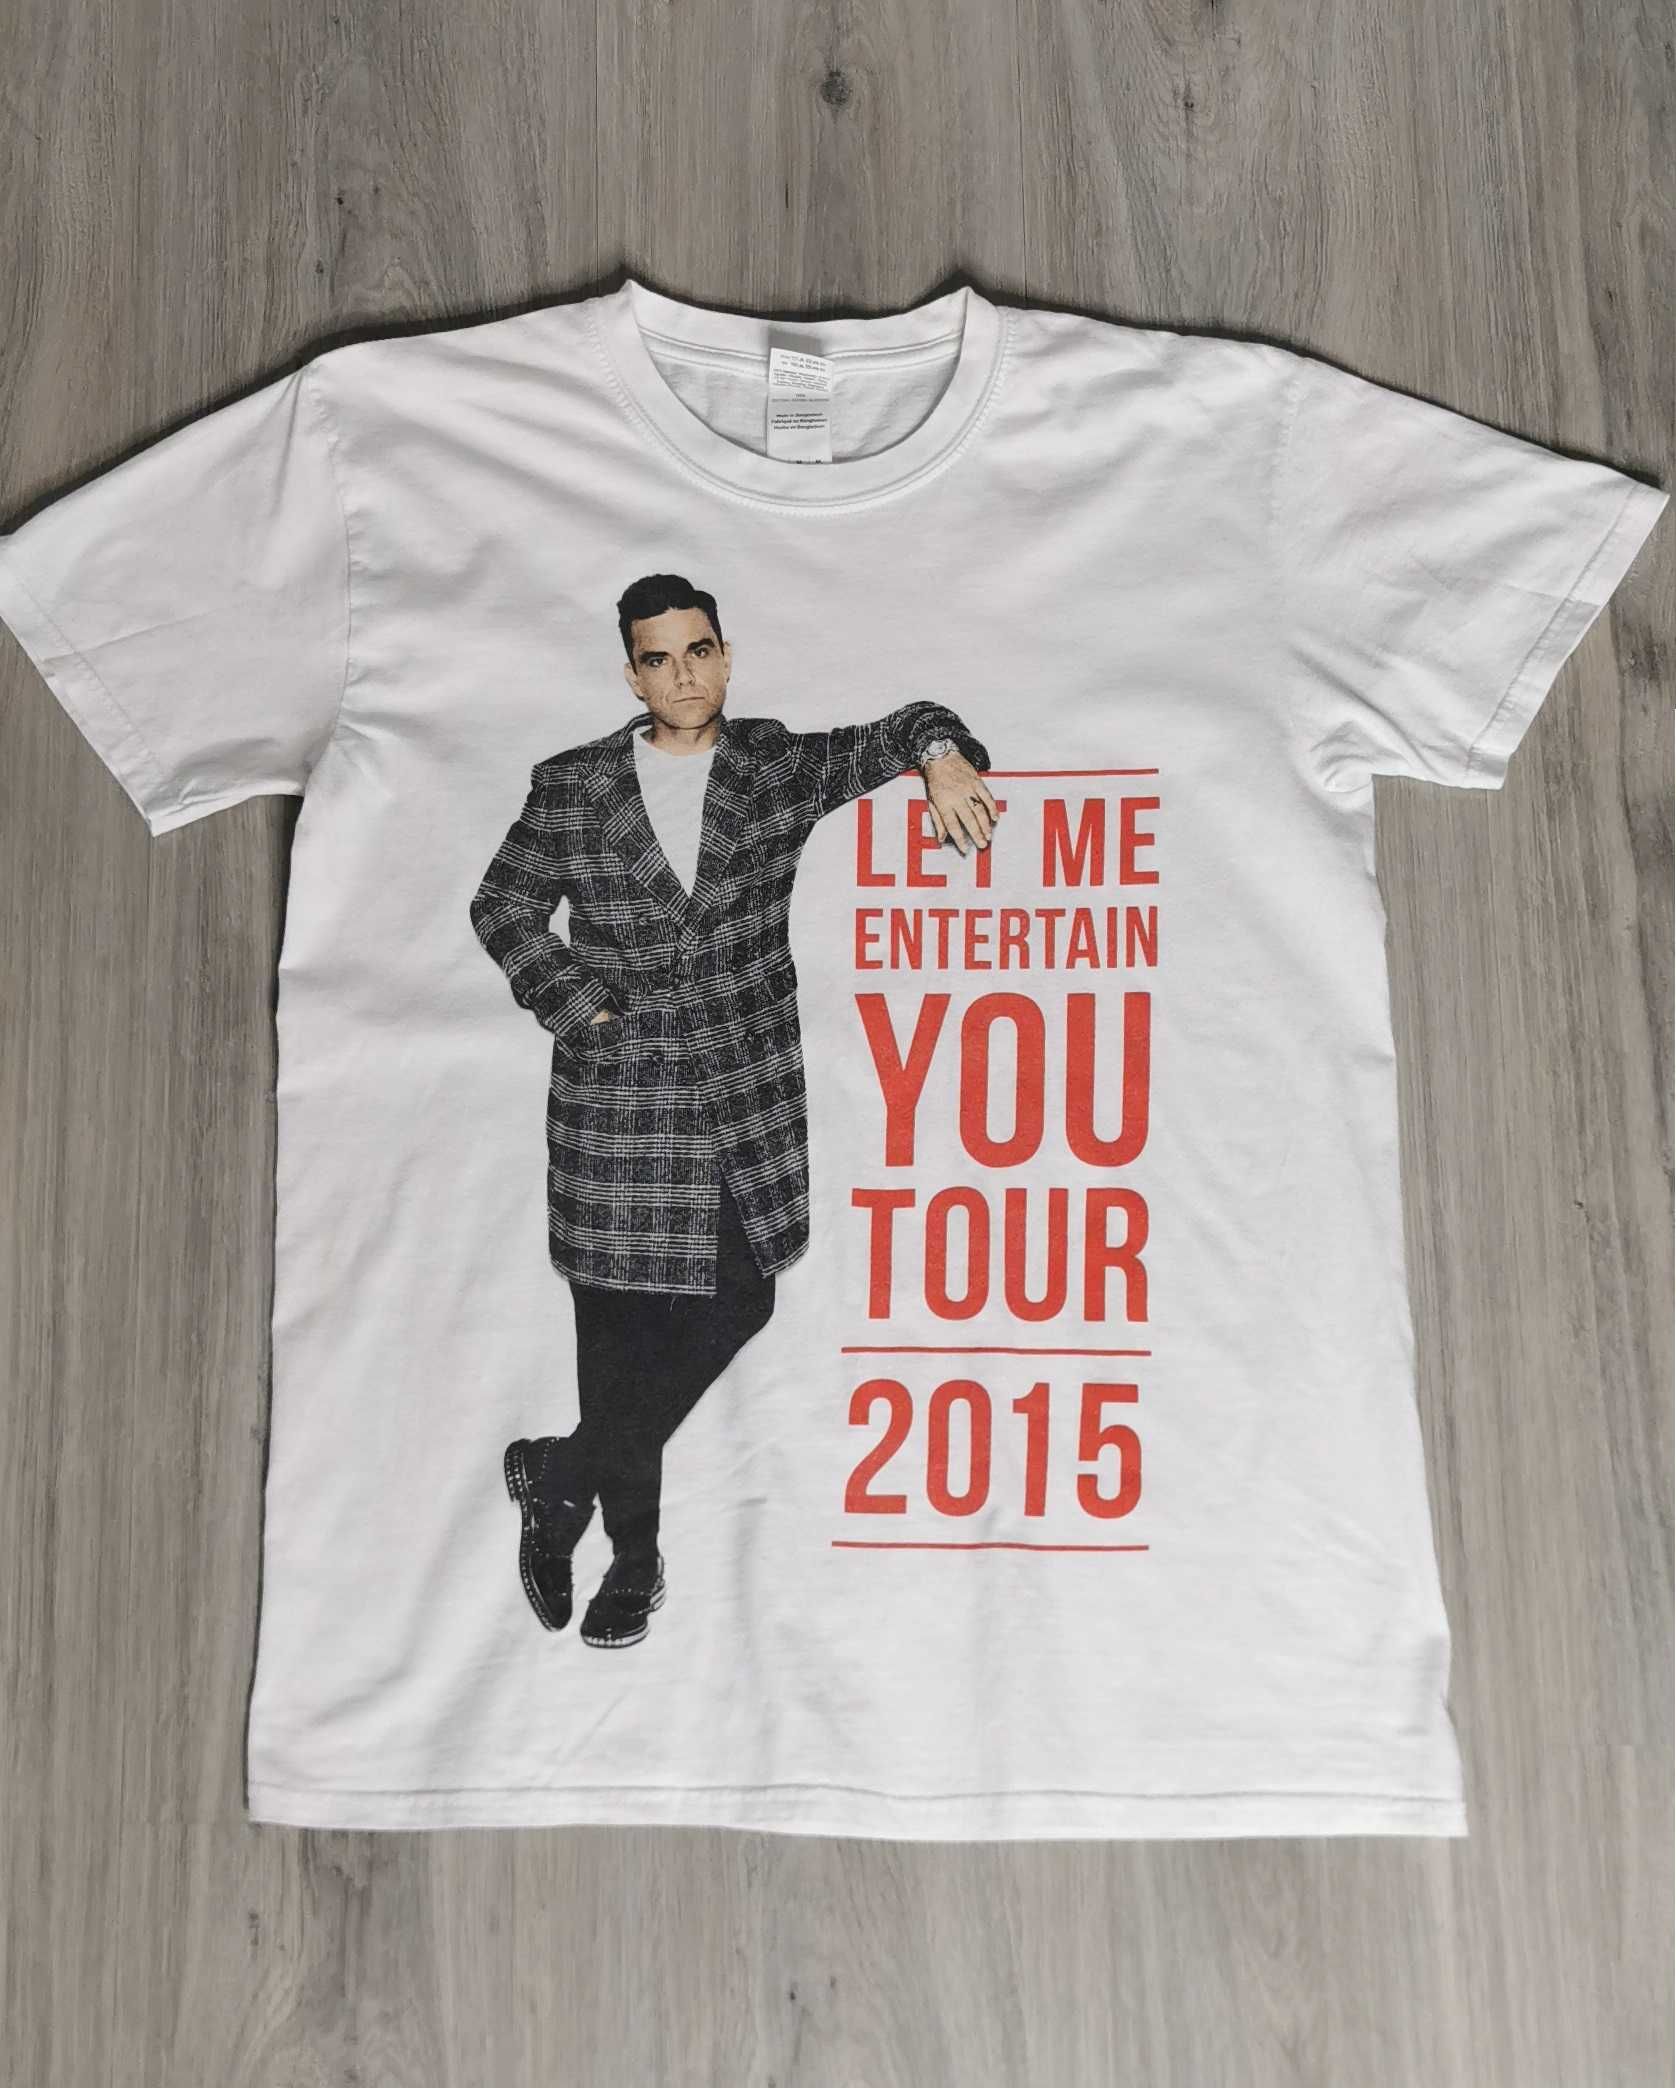 T-shirt RW Robbie Williams trasa koncertowa 2015 rozmiar M biała